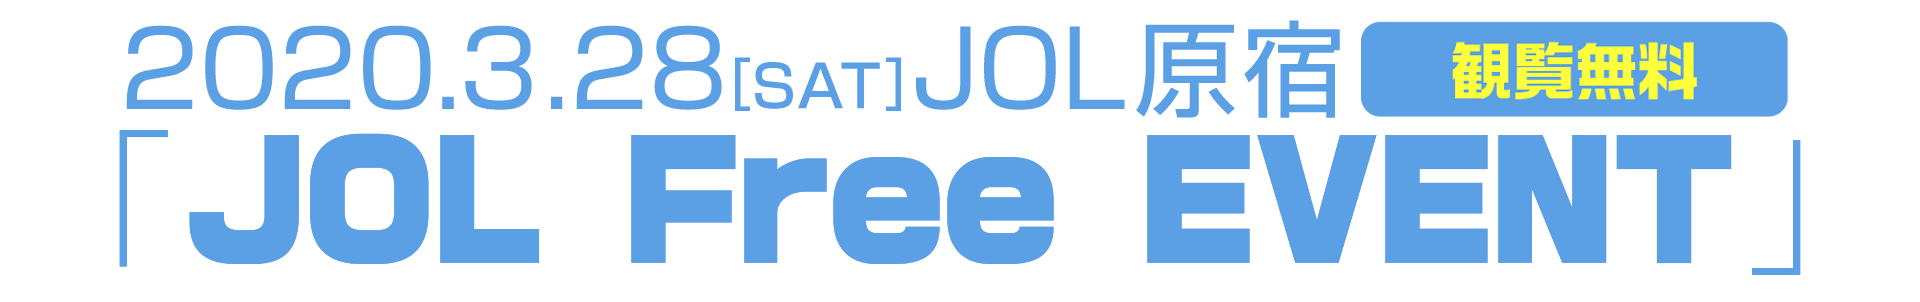 2020.3.28(SAT) JOL Free EVENT